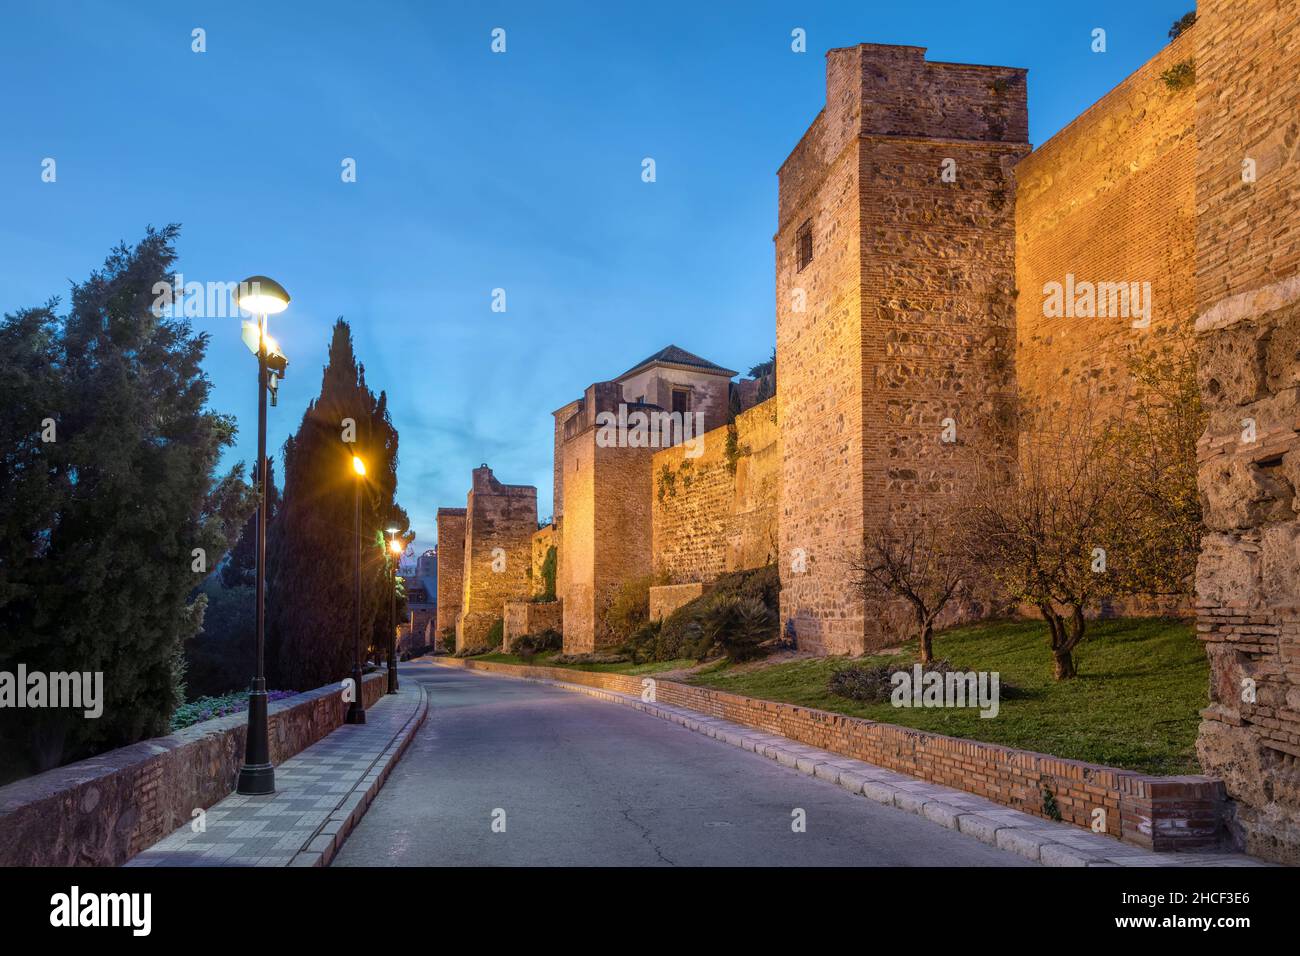 Malaga, Spain. View of illuminated wall of Alcazaba fortress - medieval moorish citadel Stock Photo